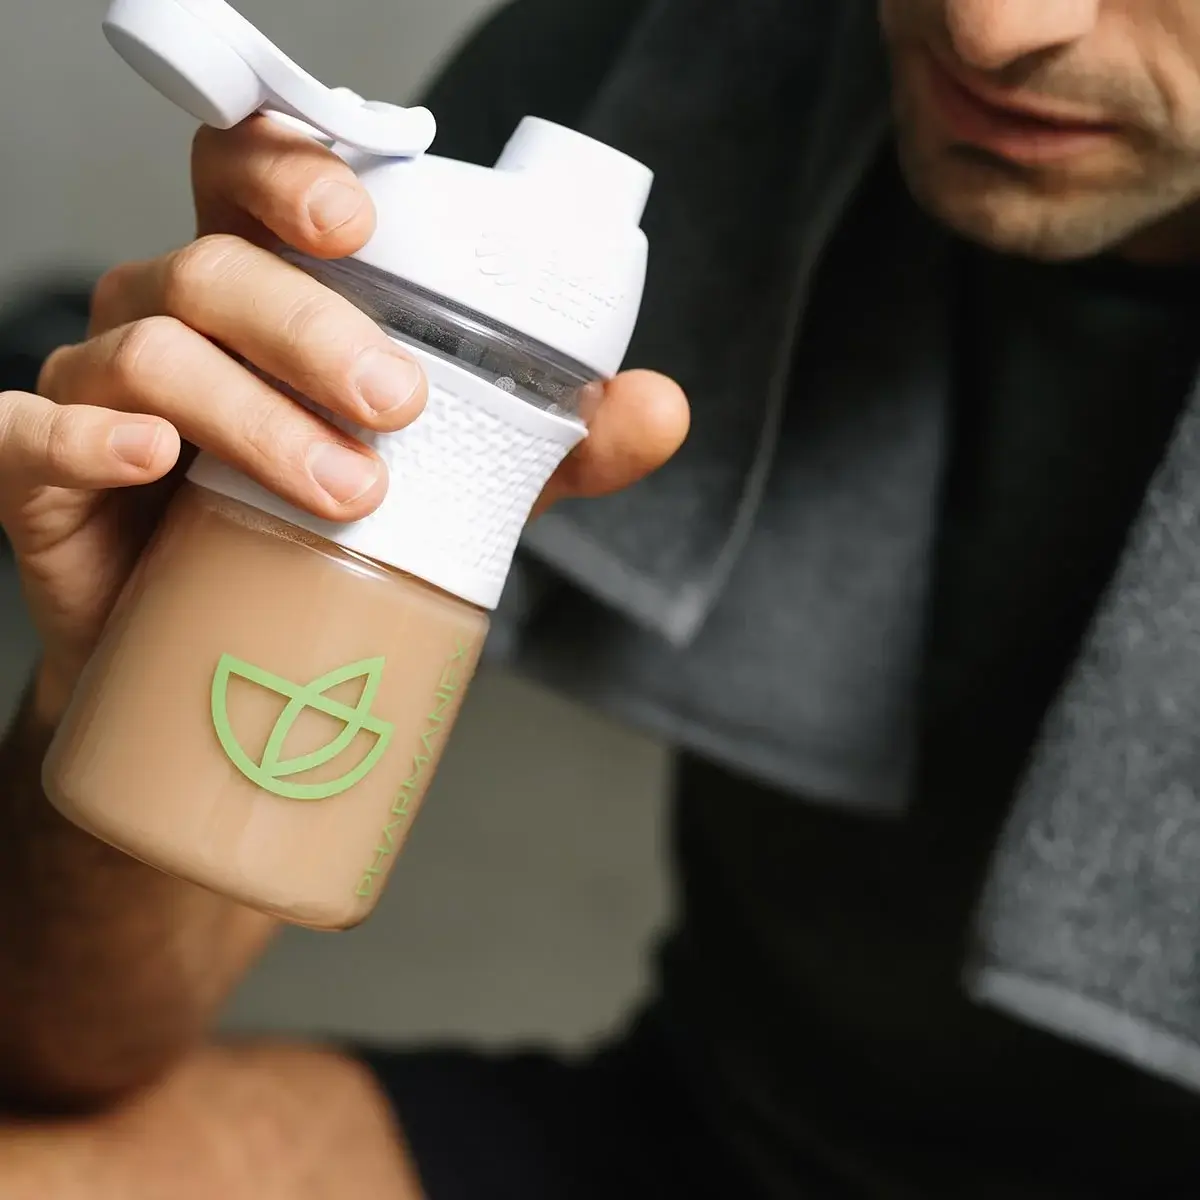 Nu Skin Pharmanex TR90 V-Shake – Veganer Proteinshake mit Schokogeschmack